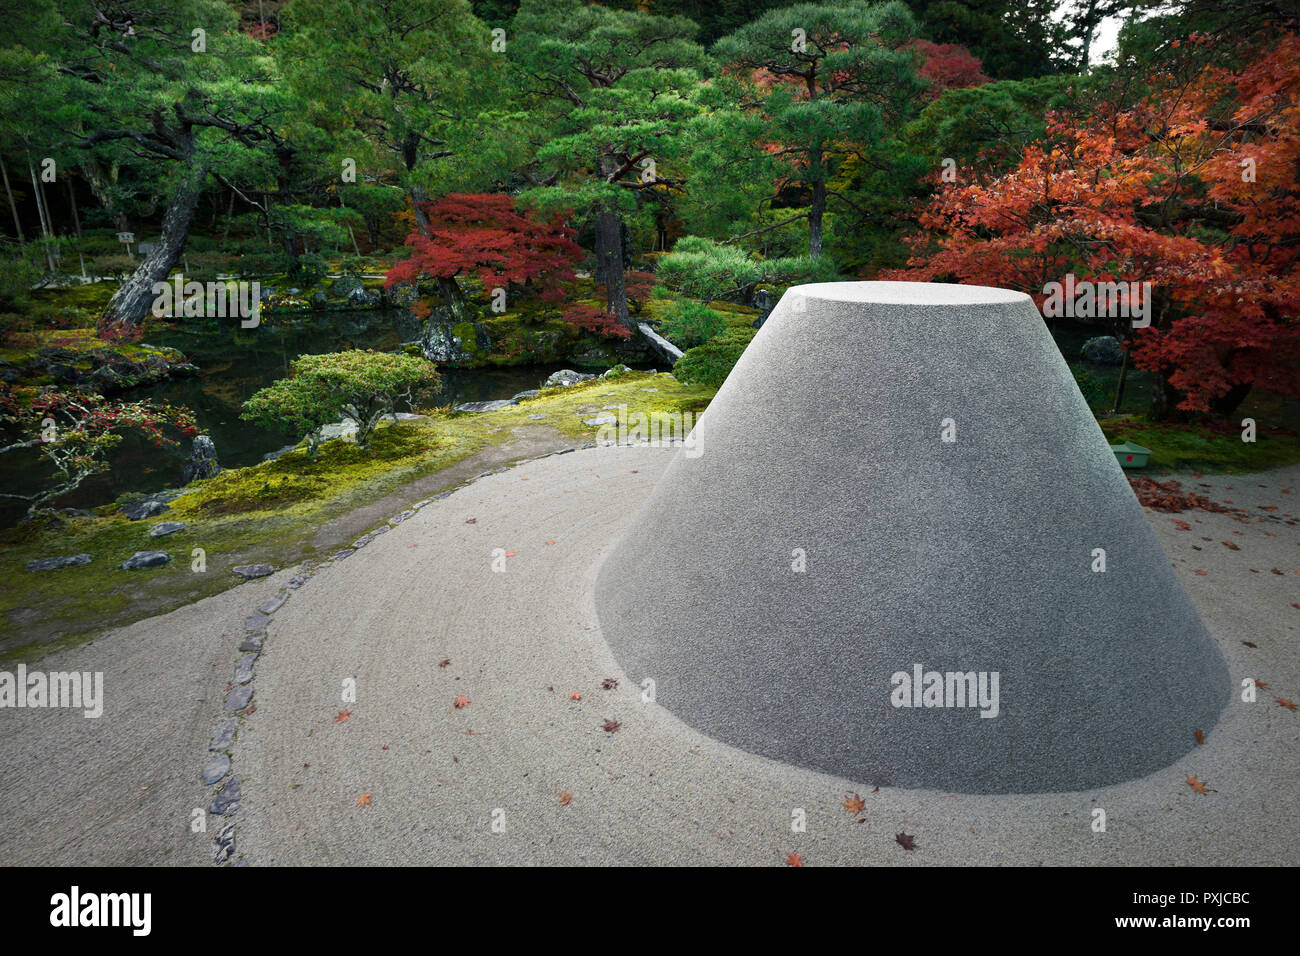 Licenza disponibile al numero MaximImages.com - struttura di sabbia che simboleggia il Monte Fuji nello scenario autunnale di Ginkaku-ji, Tempio del Padiglione d'Argento Giappone Foto Stock